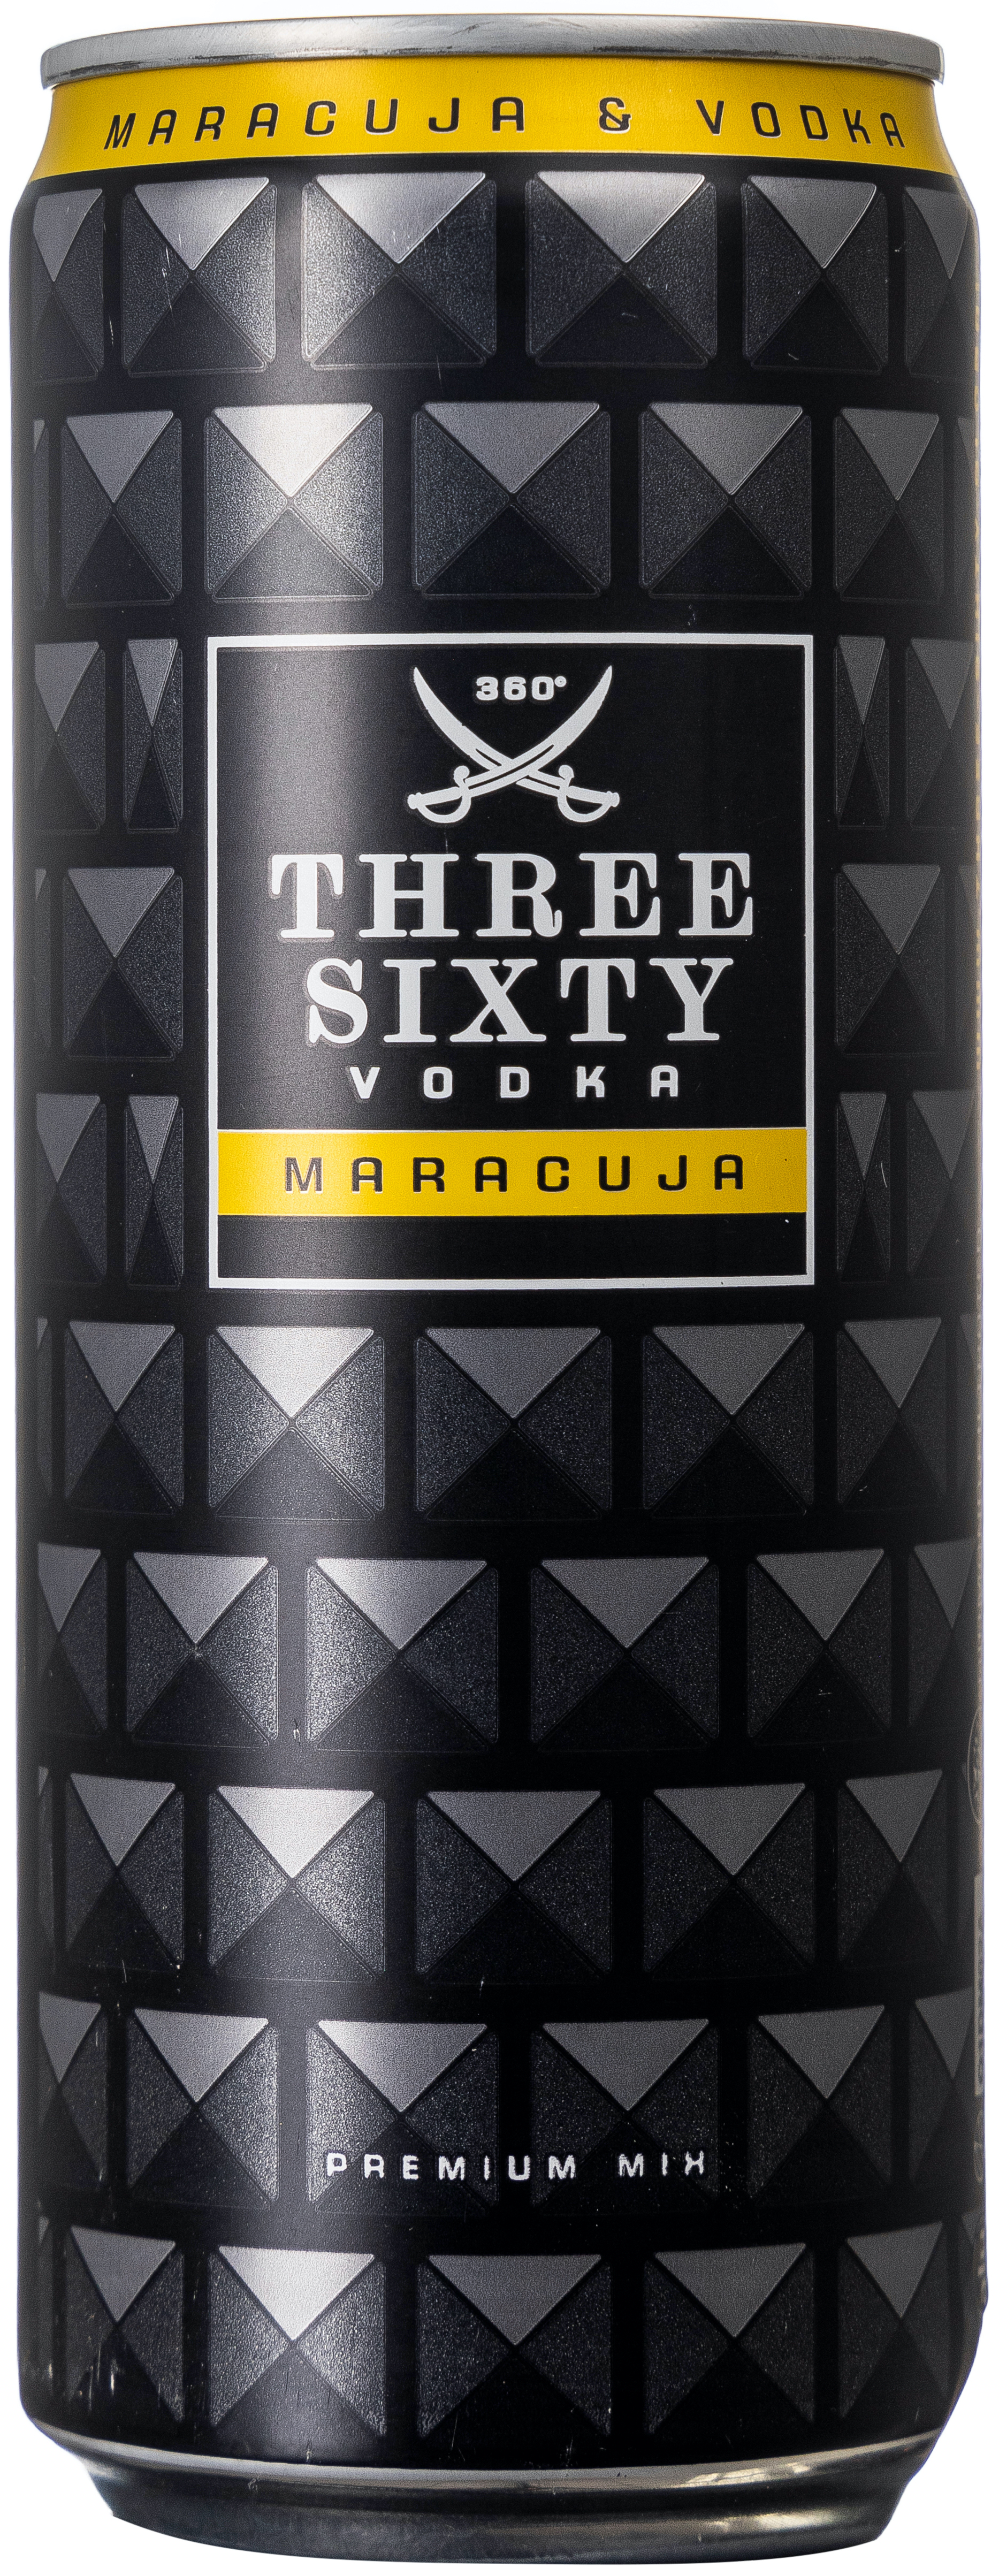 Three Sixty Vodka & Maracuja 10% vol. 0,33L EINWEG